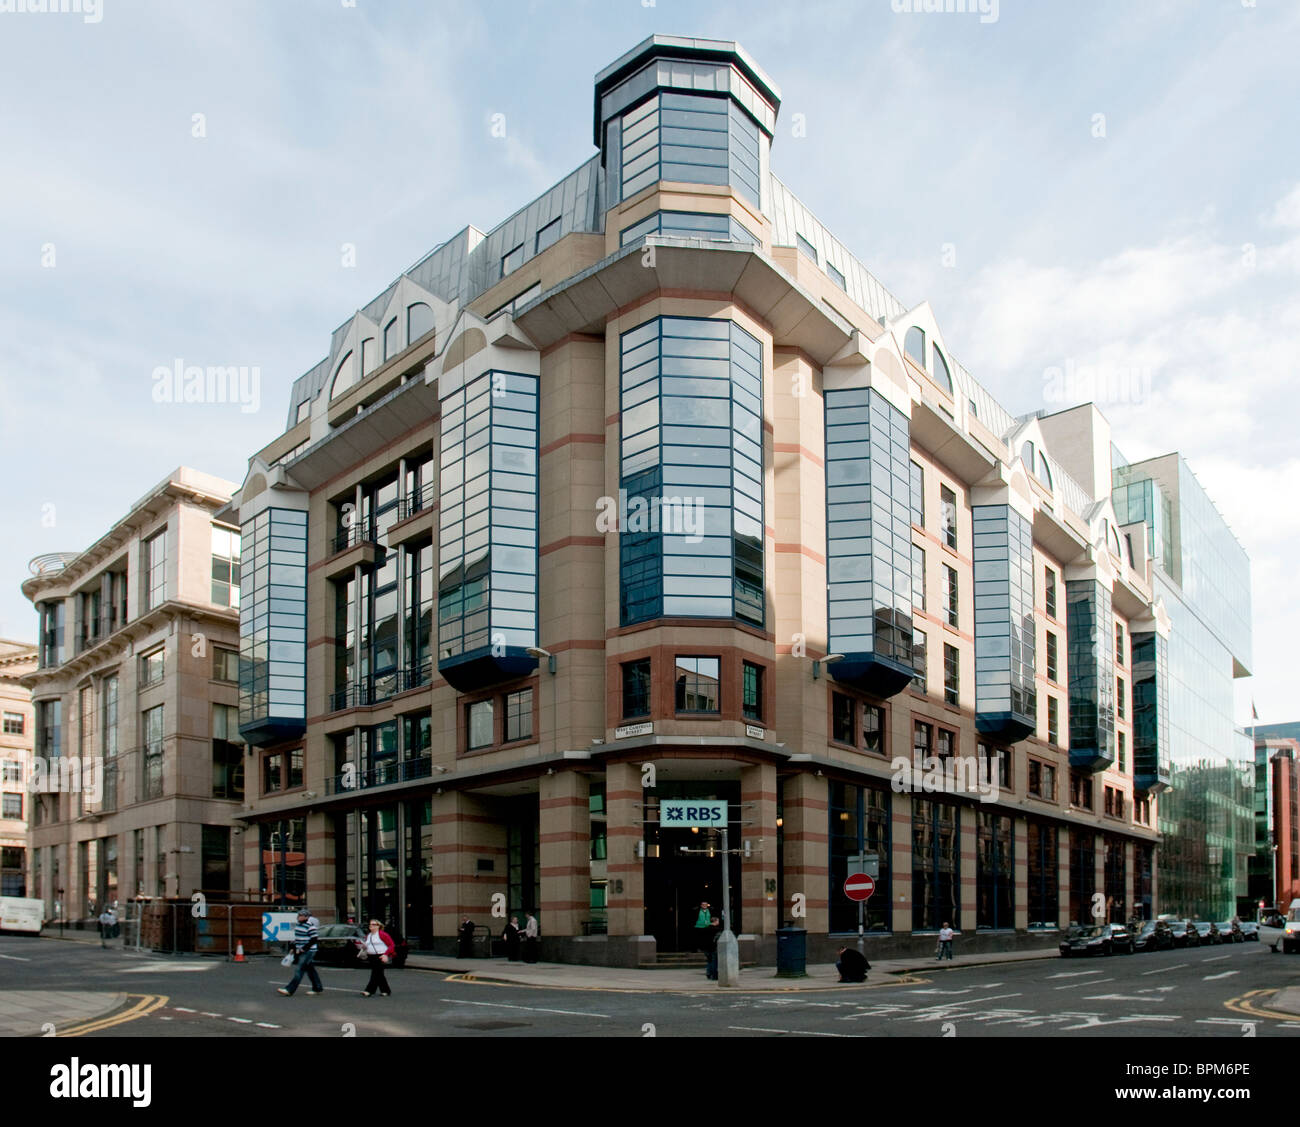 La ligne directe de l'assurance et RBS (Royal Bank of Scotland) building Glasgow. Banque D'Images